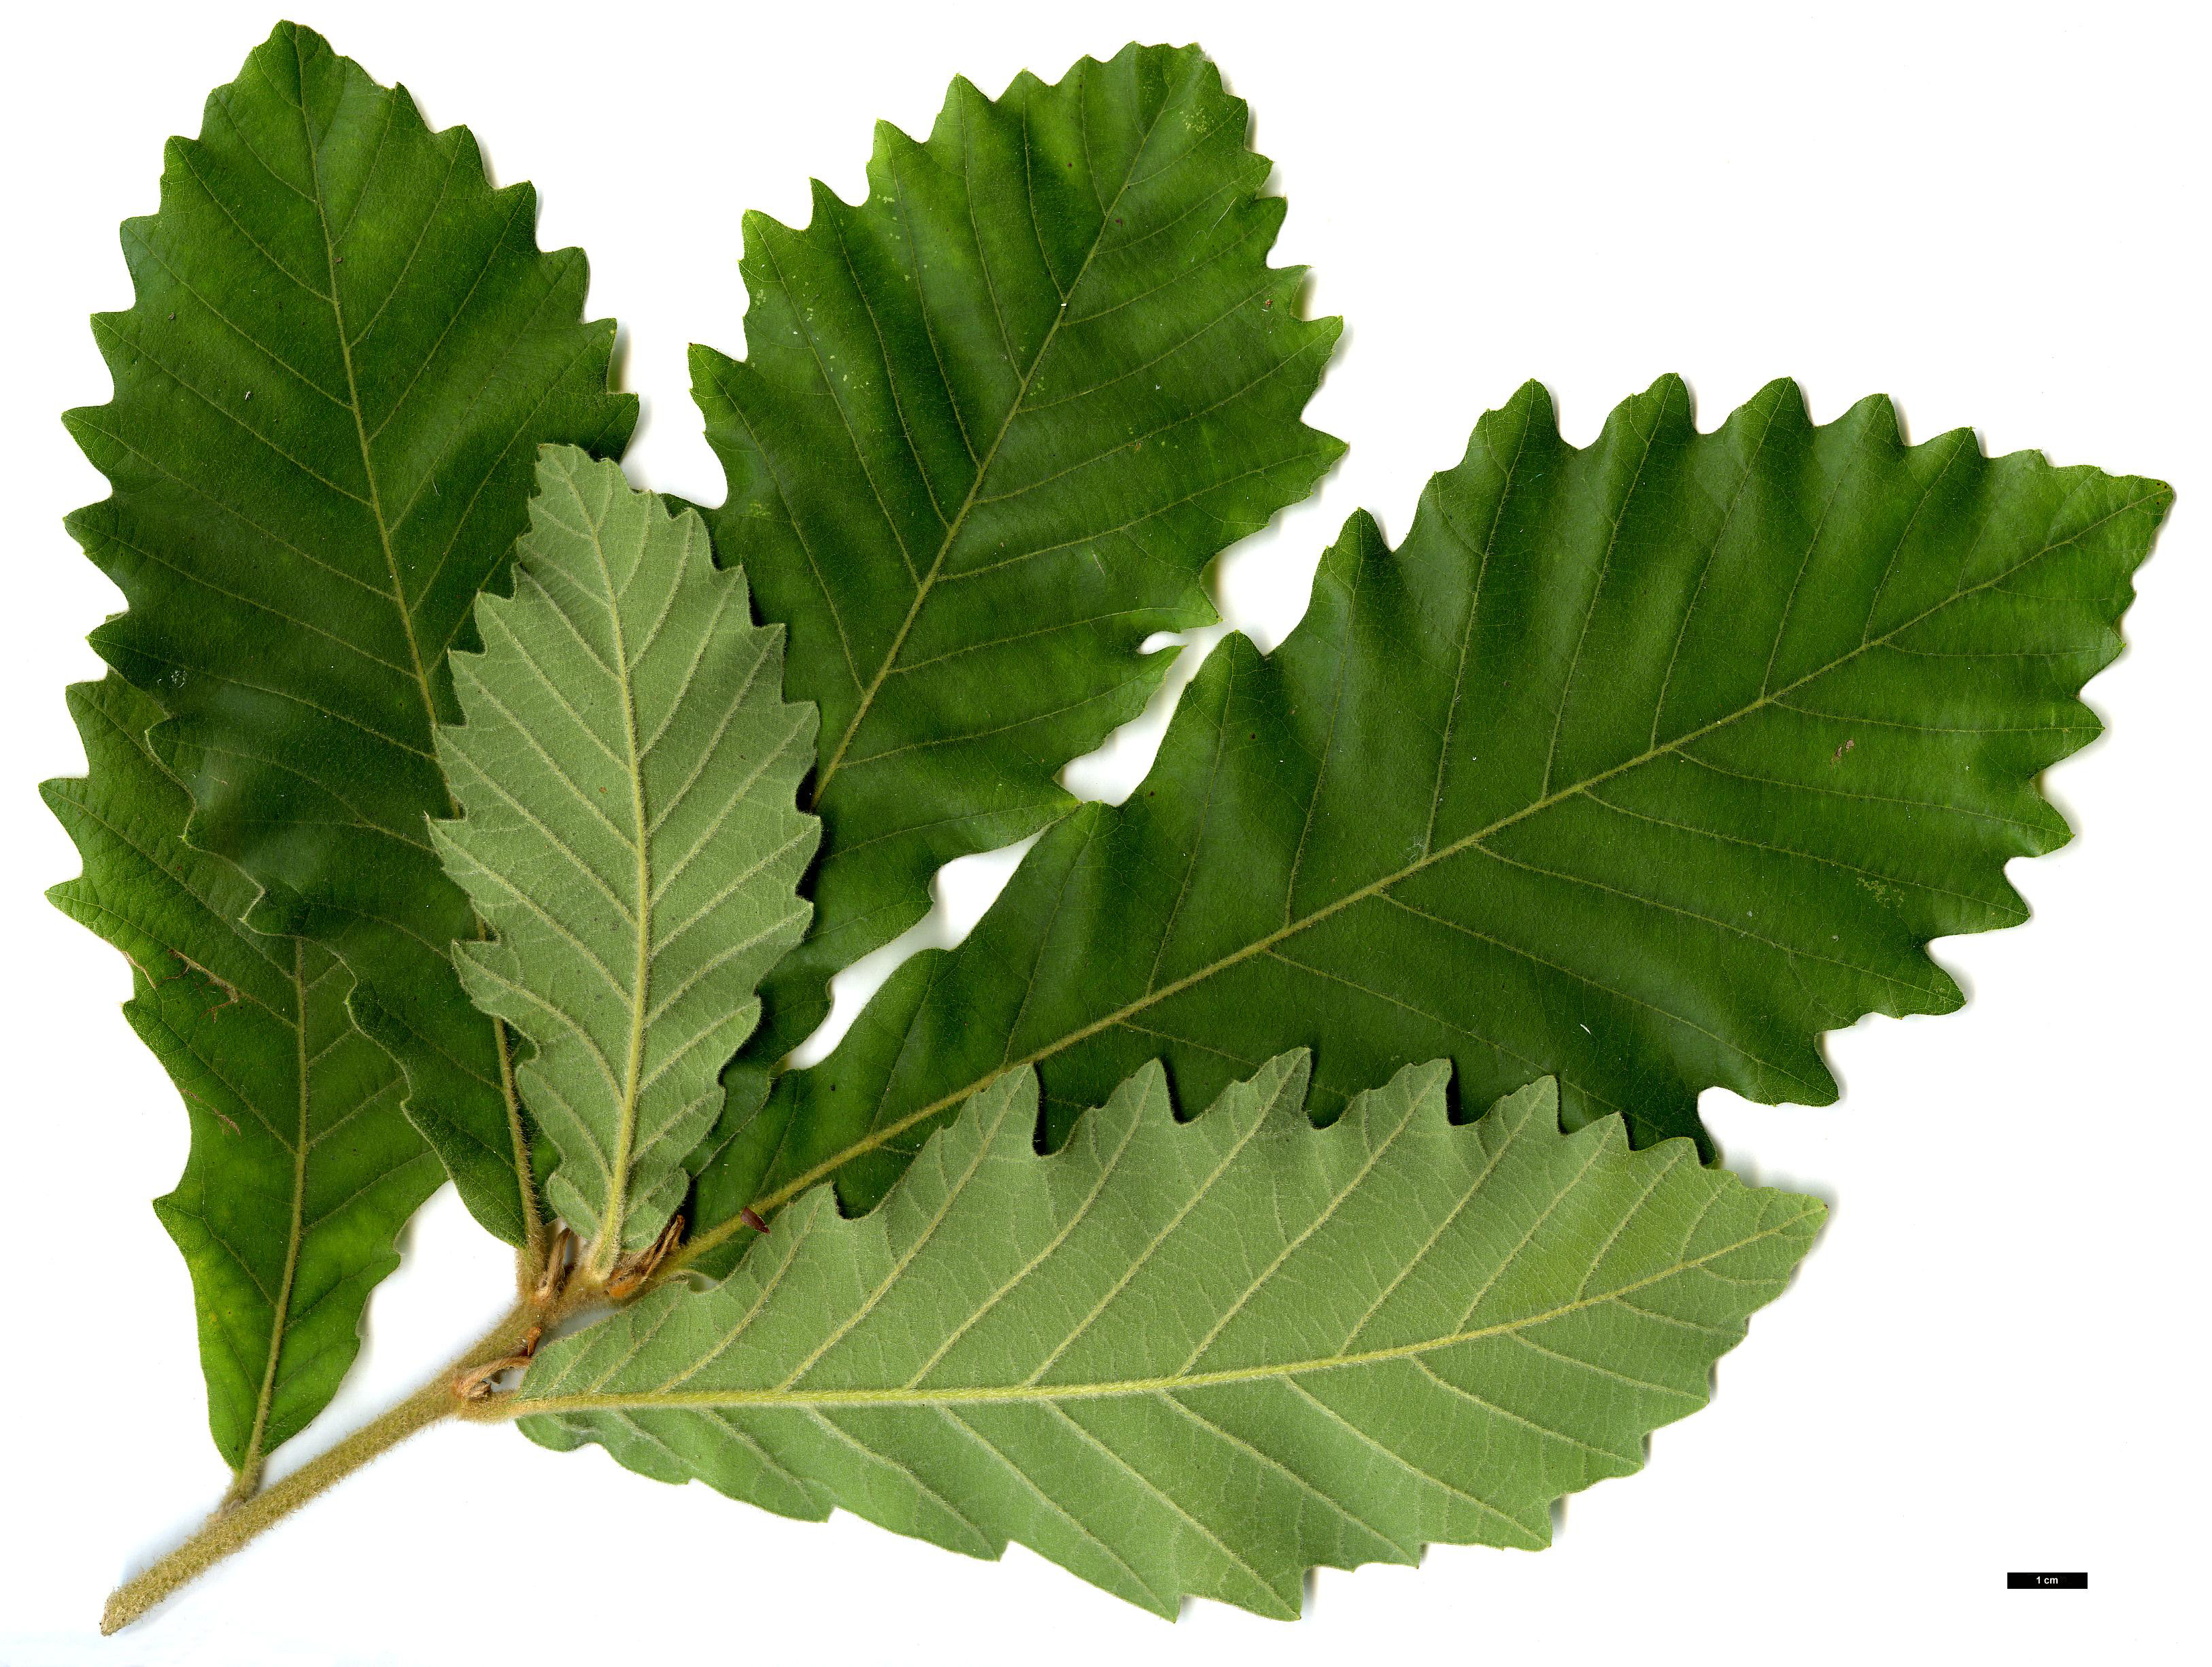 High resolution image: Family: Fagaceae - Genus: Quercus - Taxon: aliena × dentata subsp. yunnanensis